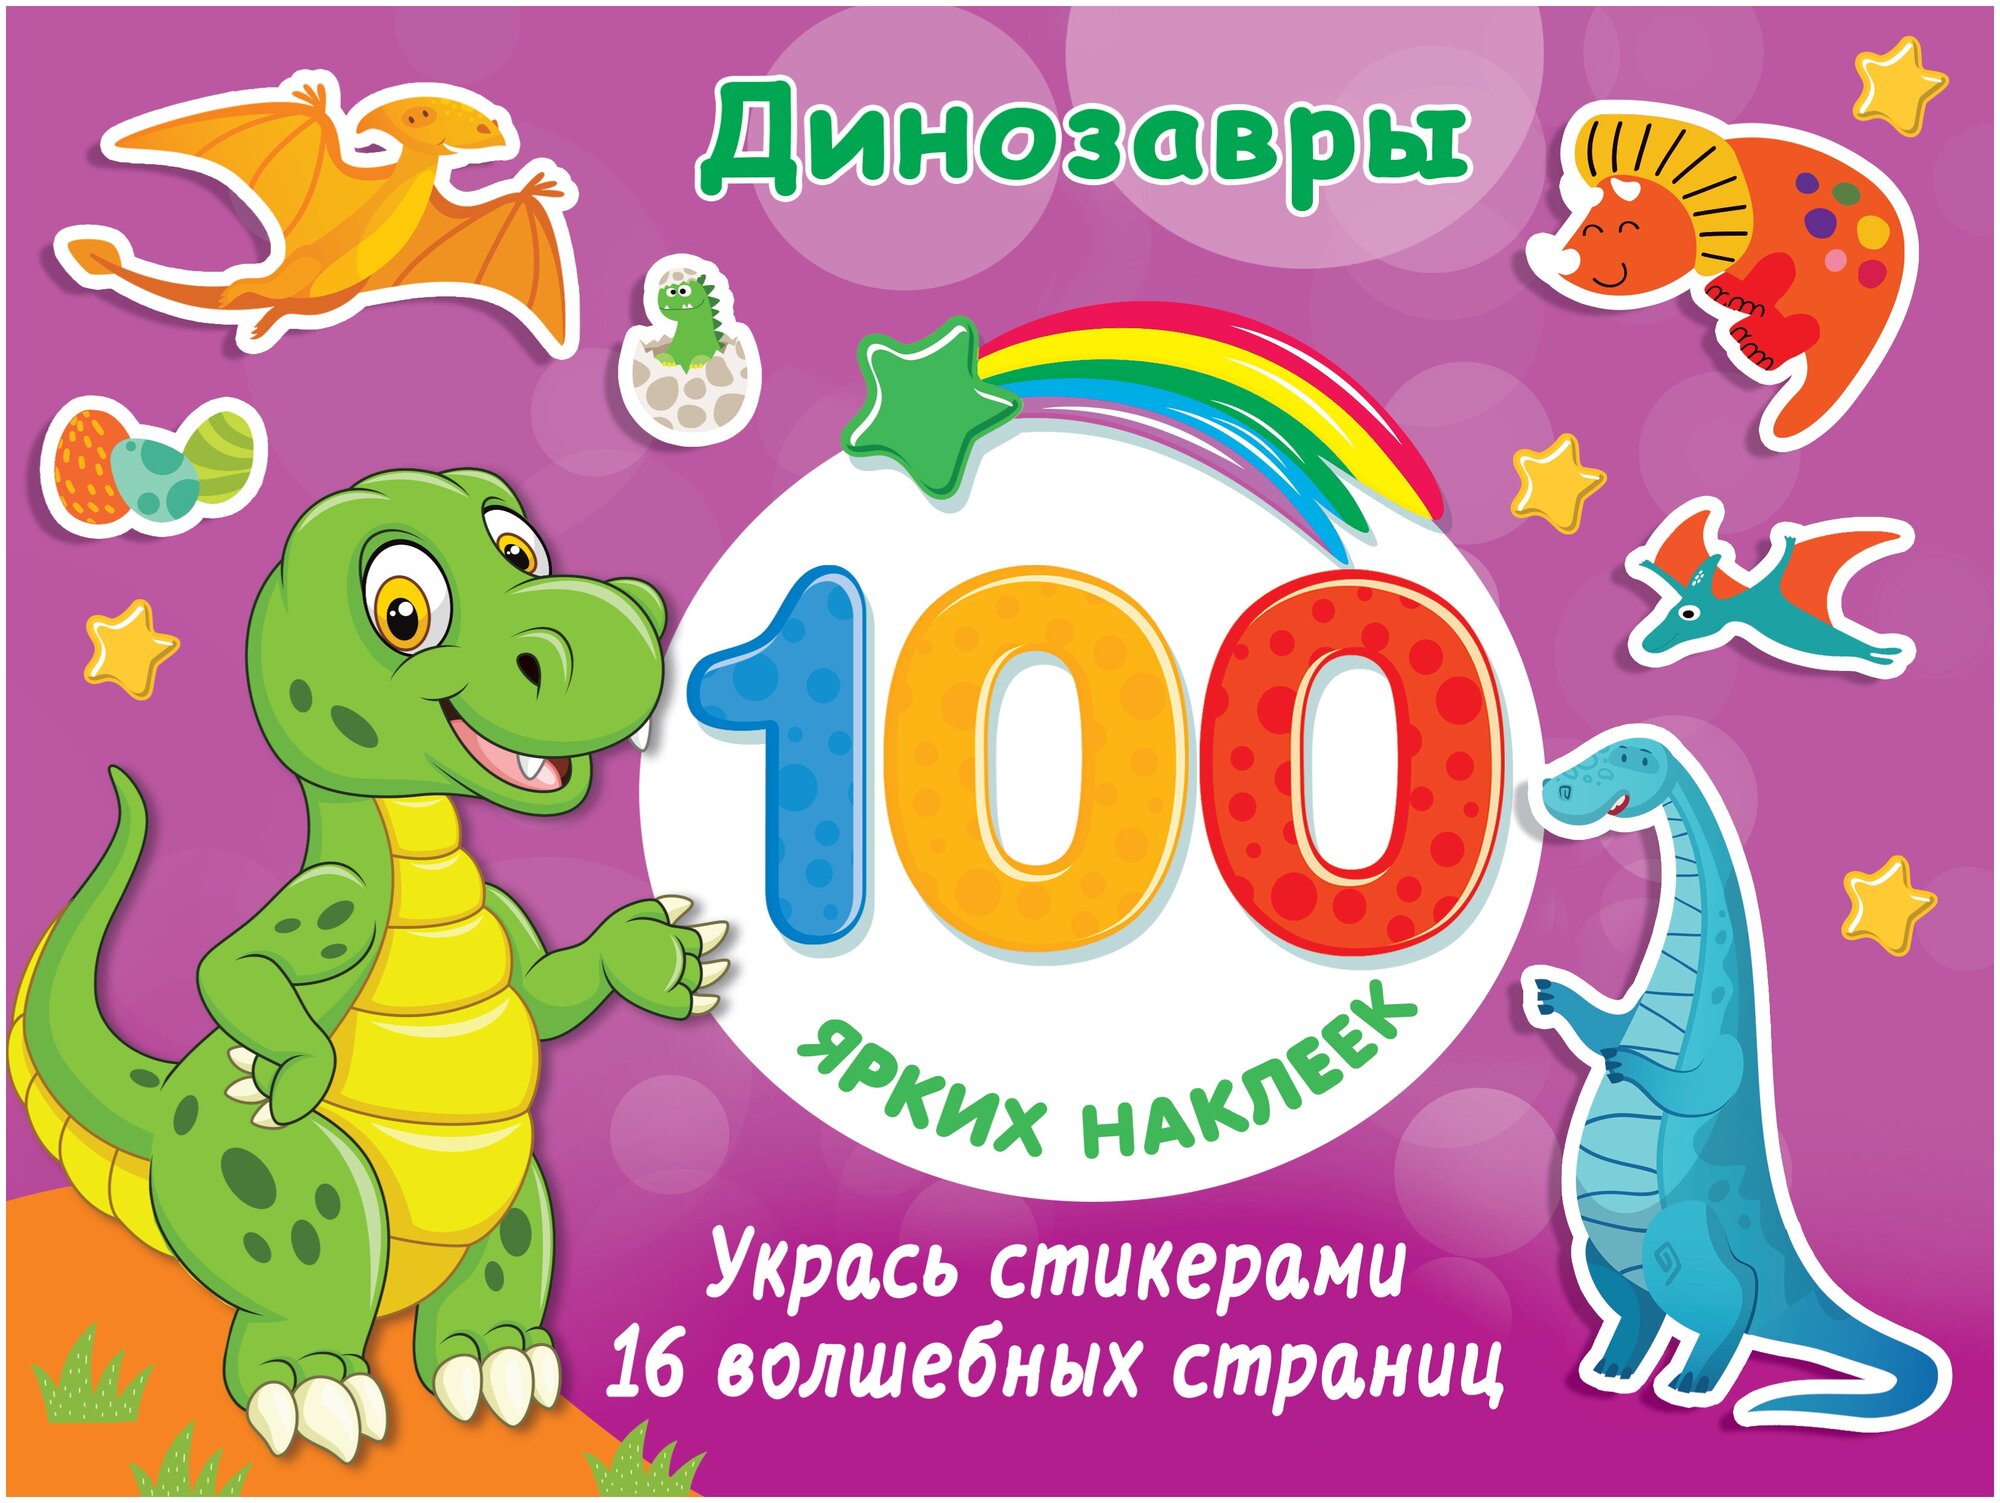 Динозавры 100 ярких наклеек и 16 волшебных страниц 0+